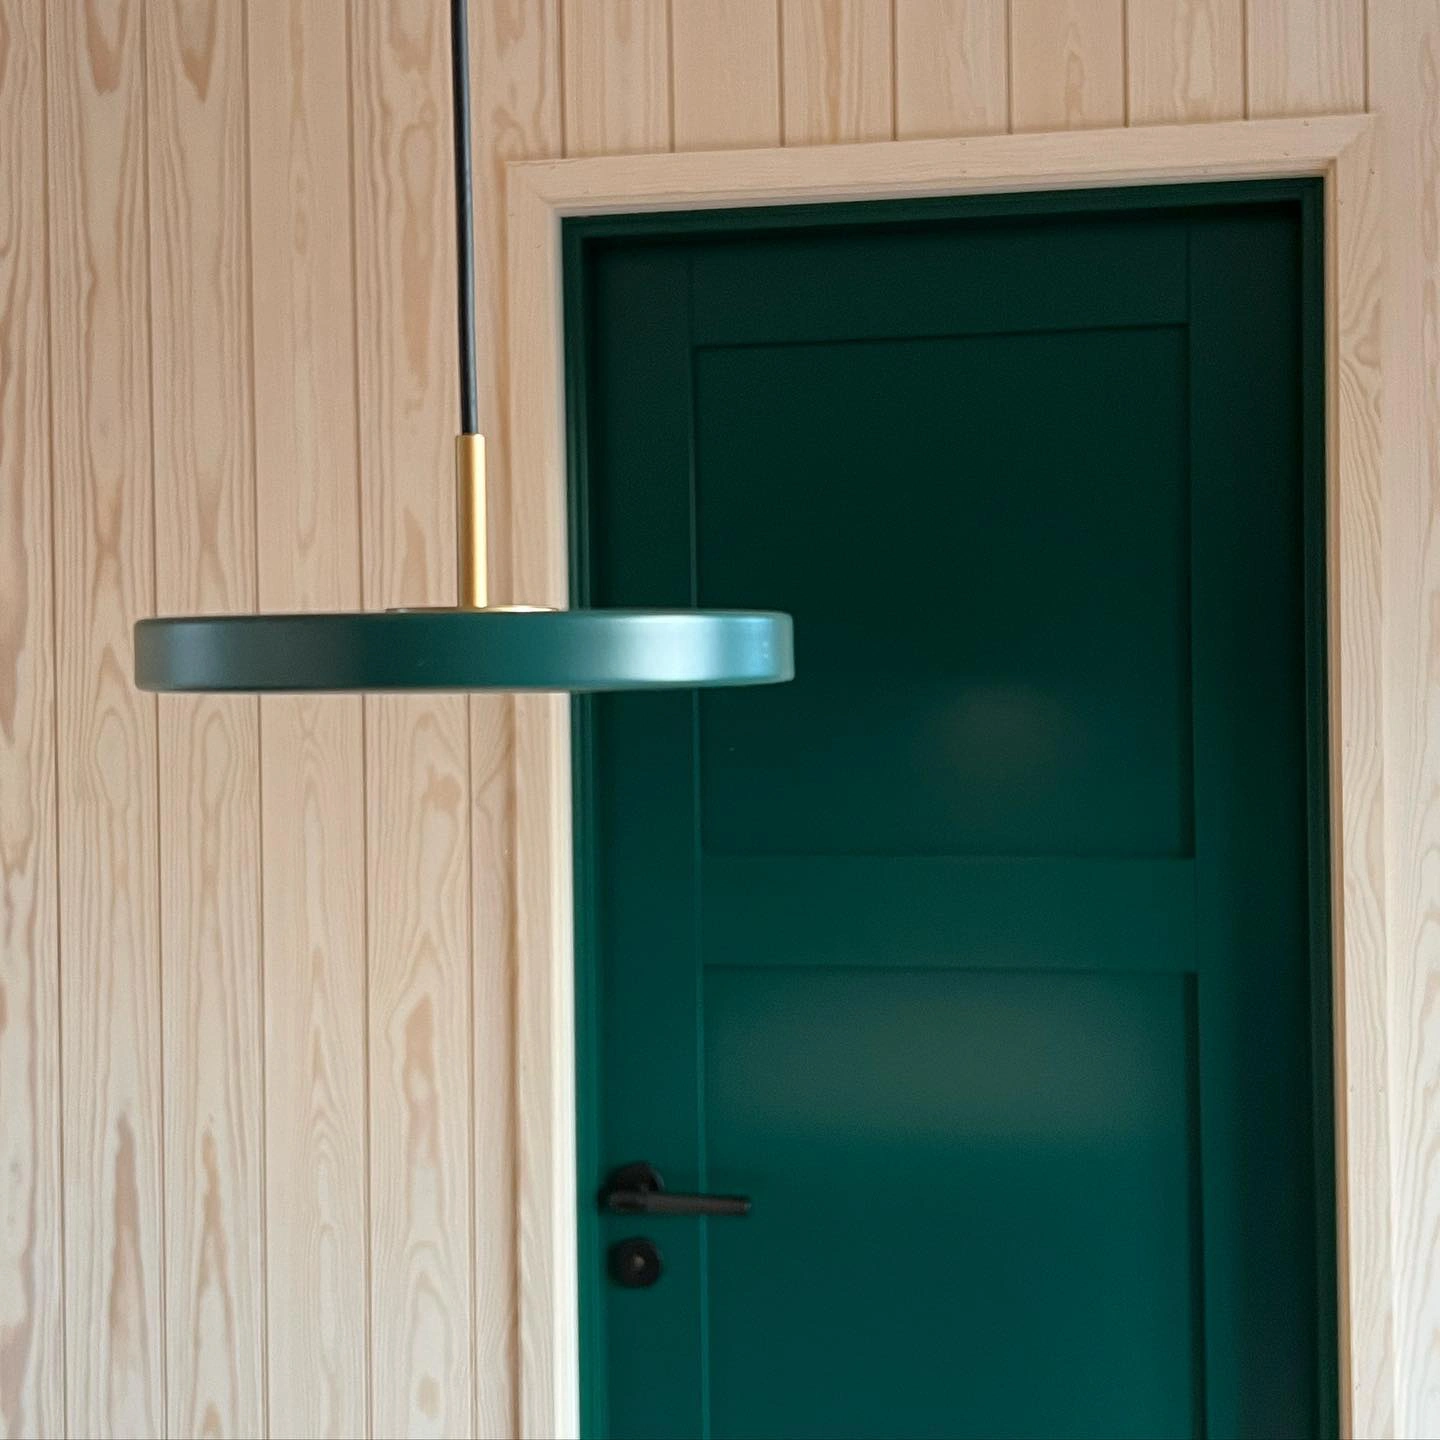 Scandinavian interior with green door RAL6005